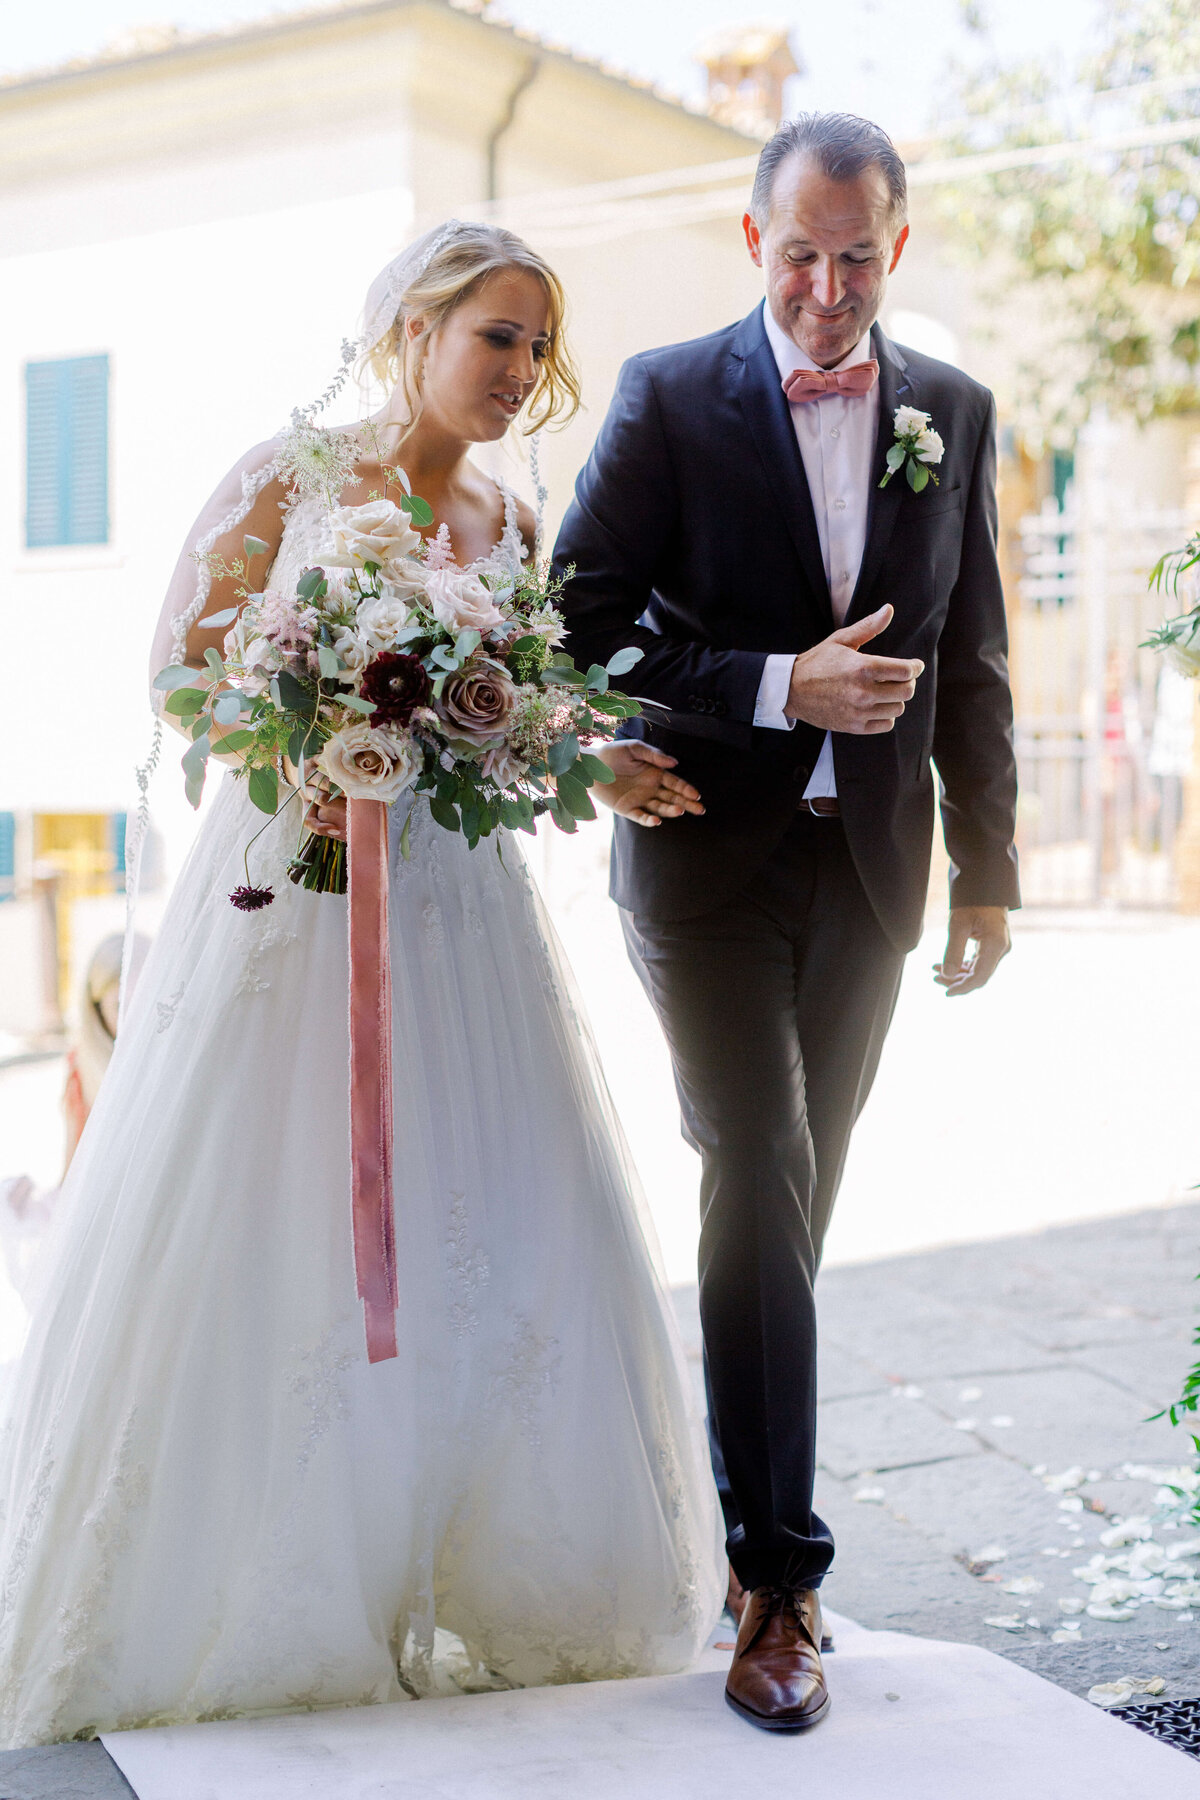 Wedding E&T - Tuscany - Italy 2019 10